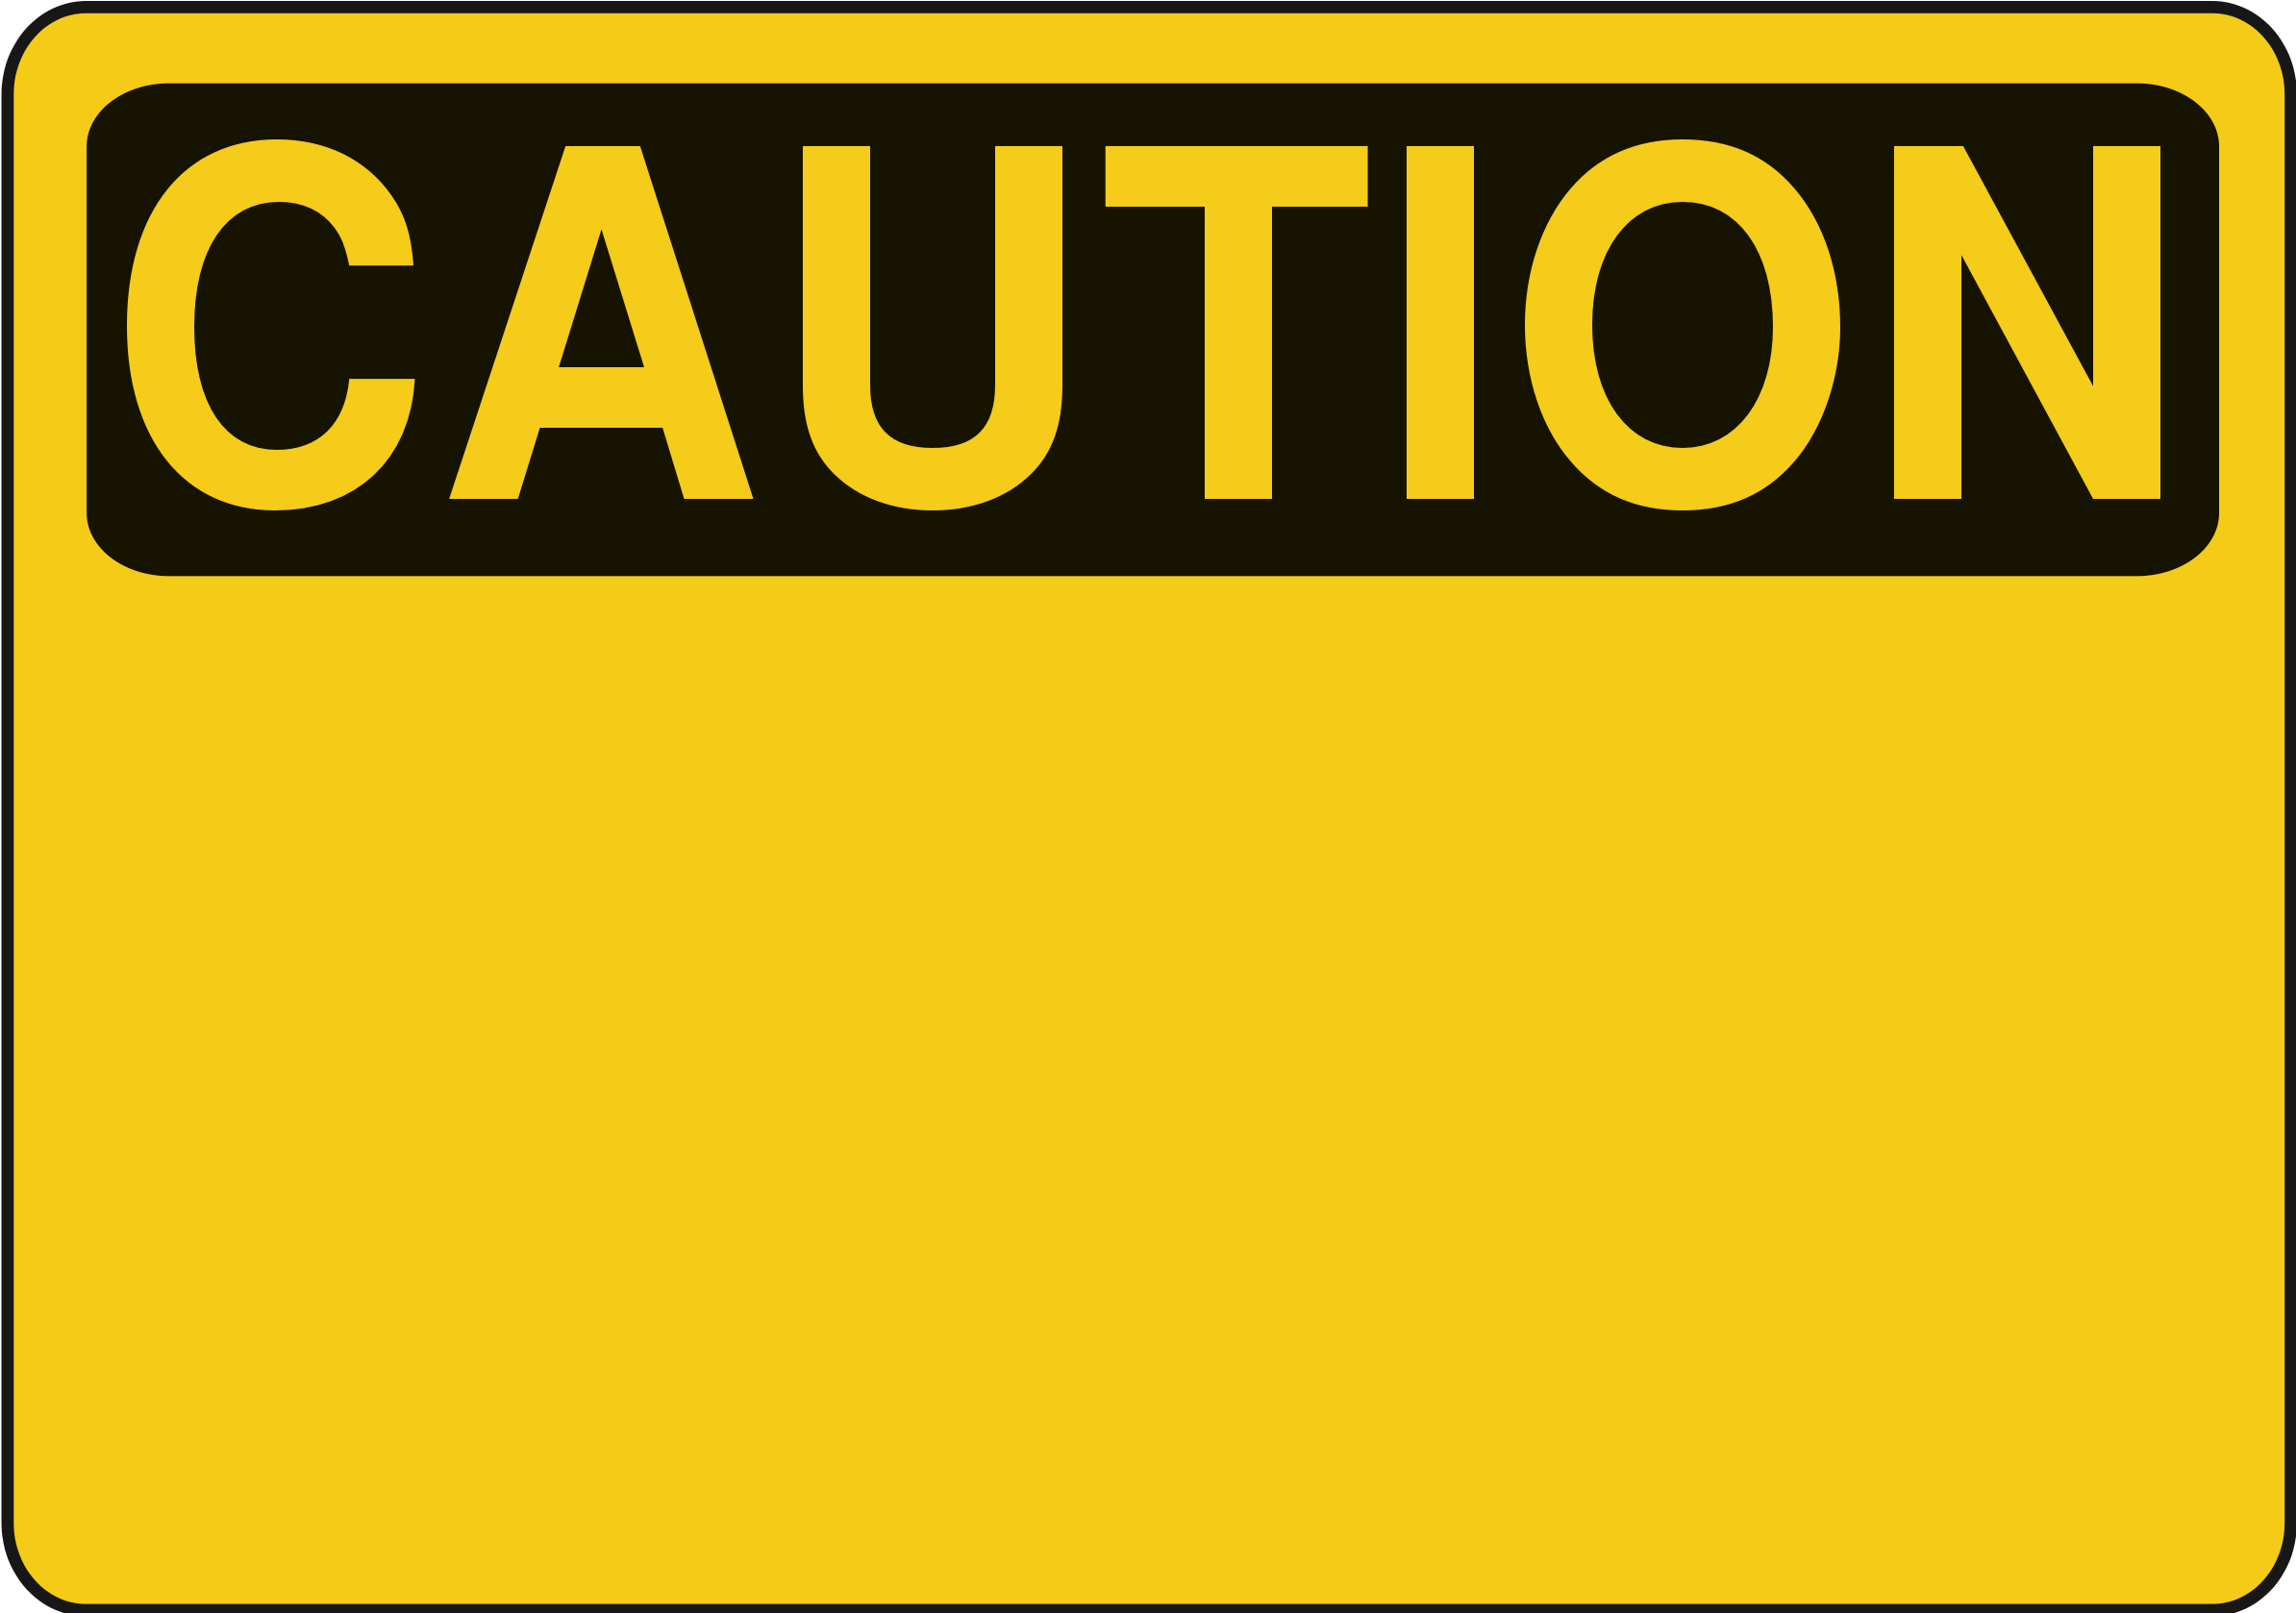 Caution Transparent Images